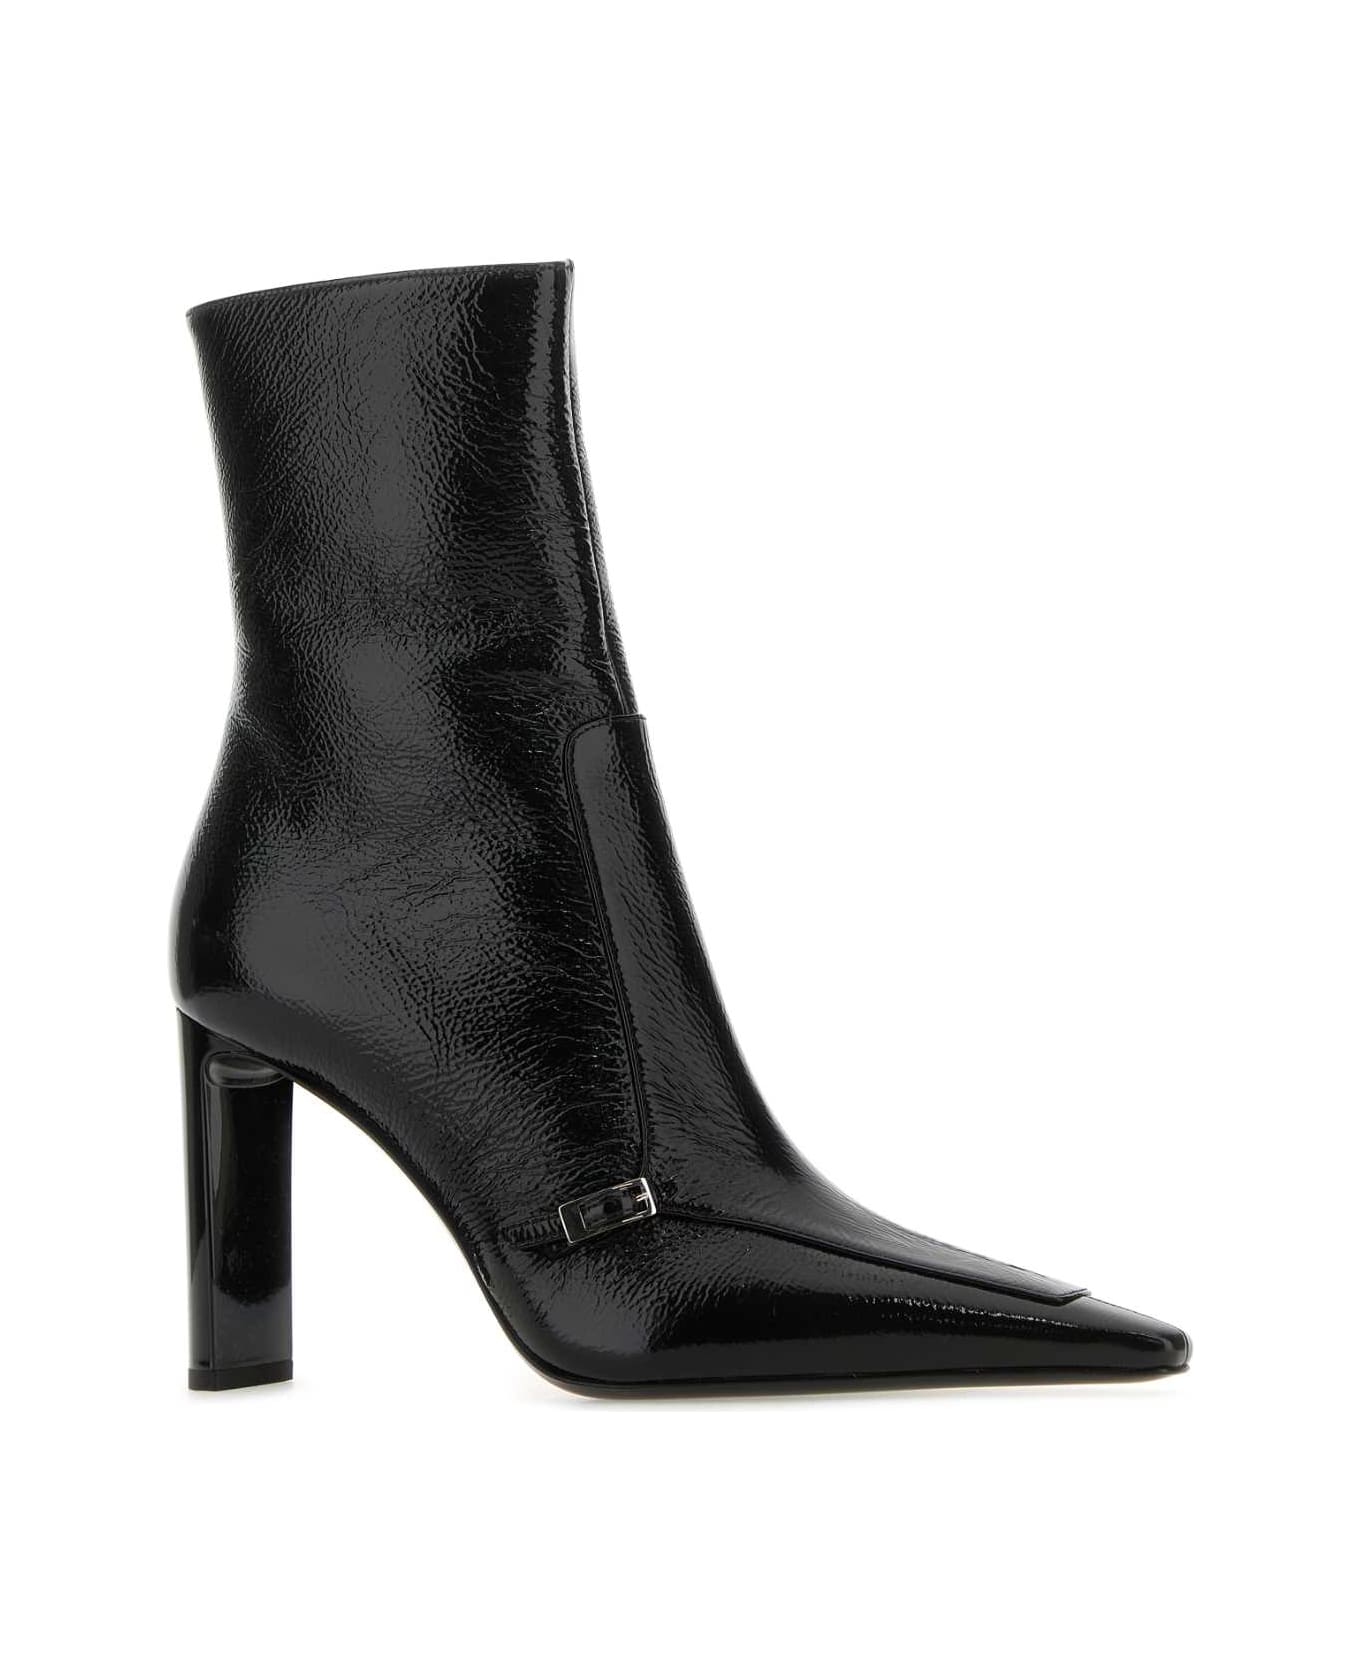 Saint Laurent Black Leather Vendome Ankle Boots - NERO